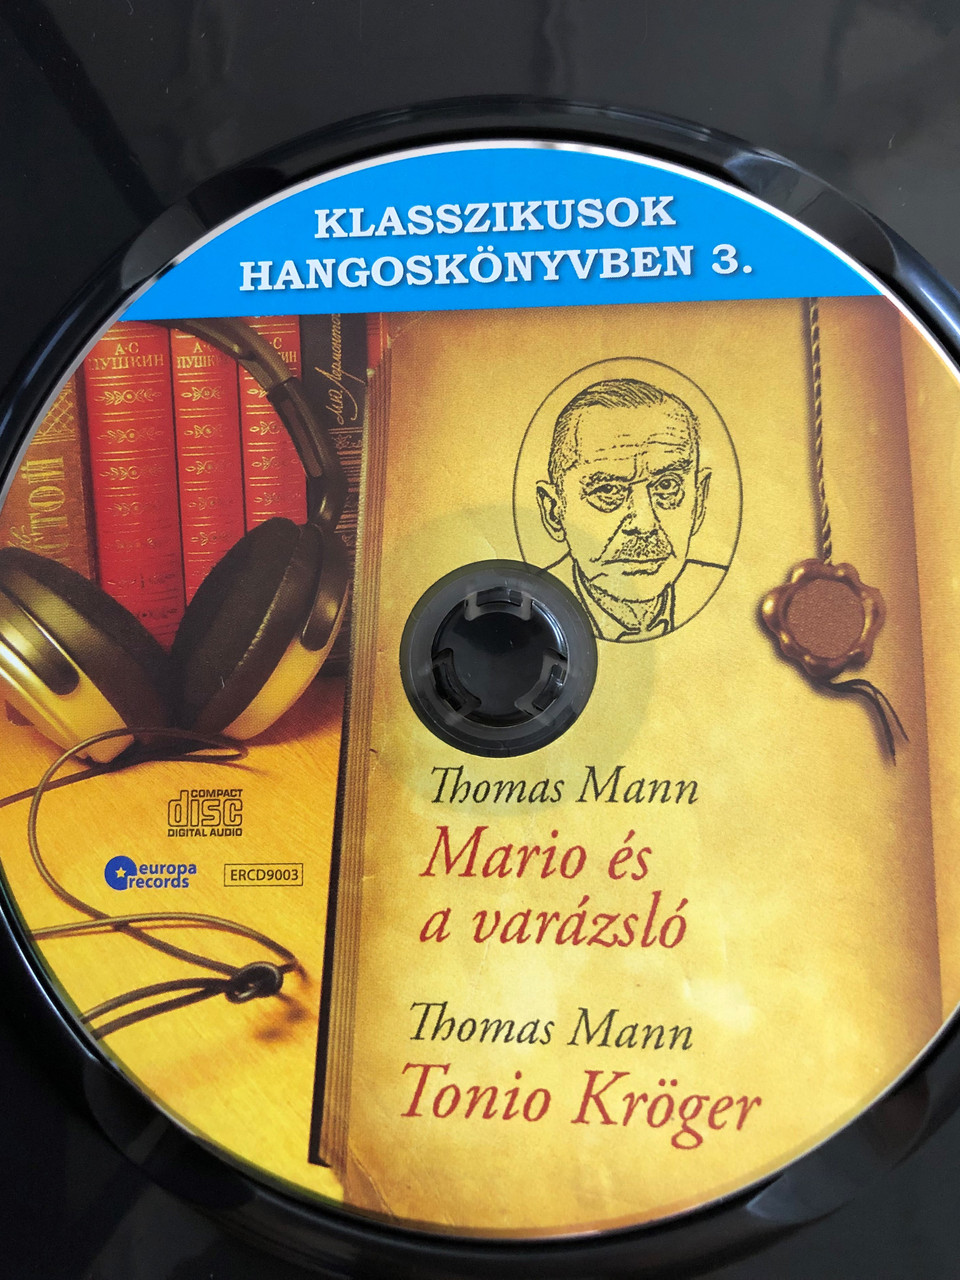 Klasszikusok Hangoskönyvben 3. / Thomass Mann: Mario és a varázsló, Tonio  Kröger / Kötelezők röviden / Classic Writers in Audio 3. / Hungarian Audio  Book / Audio CD 2009 / ERCD 9003 - bibleinmylanguage